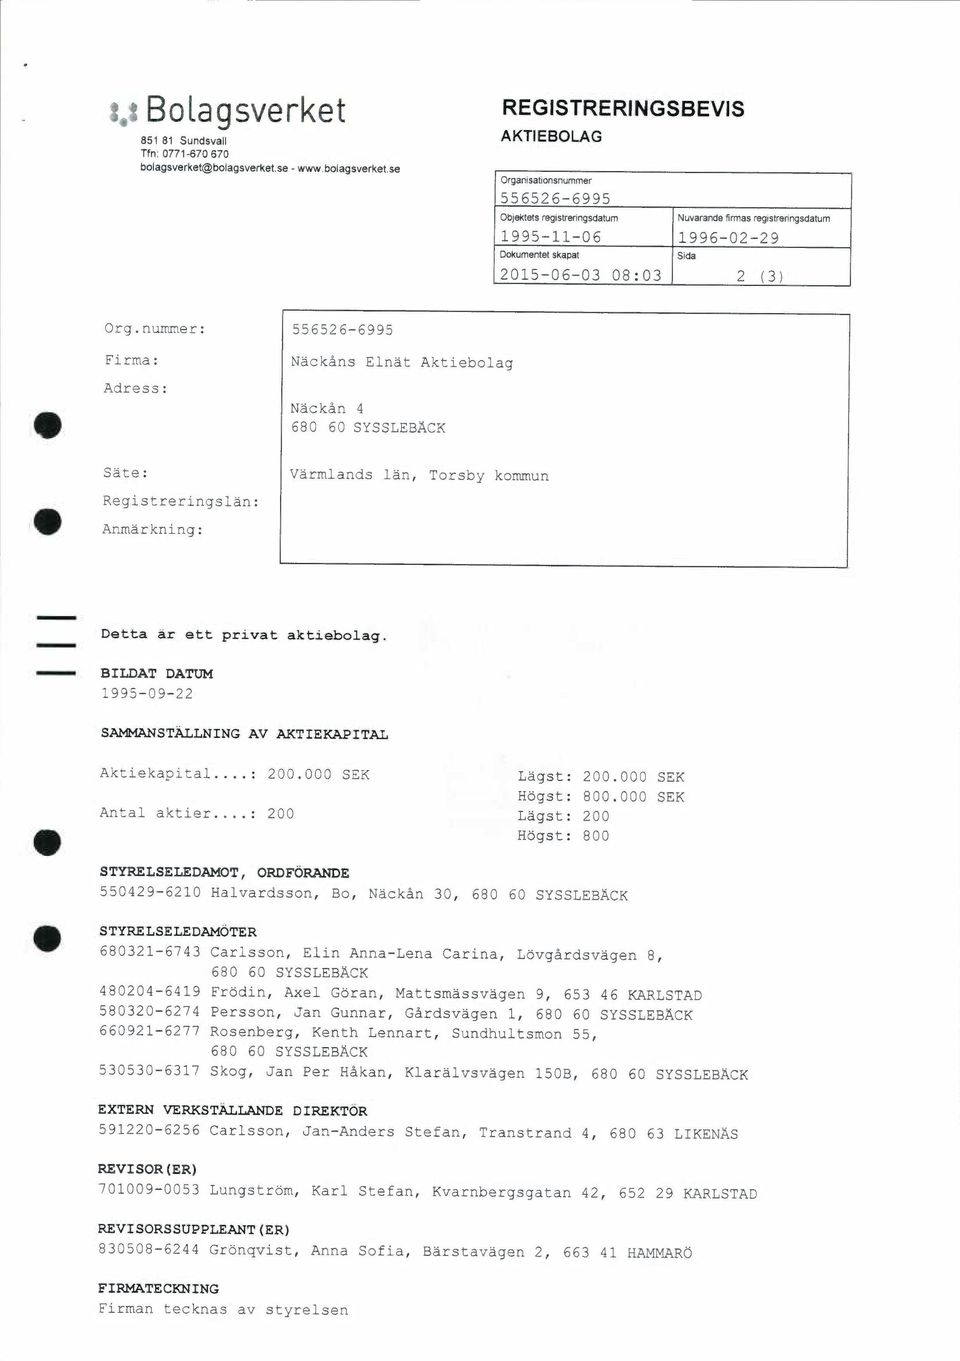 se - www.se REGISTRERINGSBEVIS AKTIEBOLAG Organisationsnummer Objektets regisvenngsdatum Nuvarantle firtnas registrenngsdatum 1995-11-06 1996-02-29 Dokumentet skapat Sida 2015-06-03 08:03 2 (3) Org.